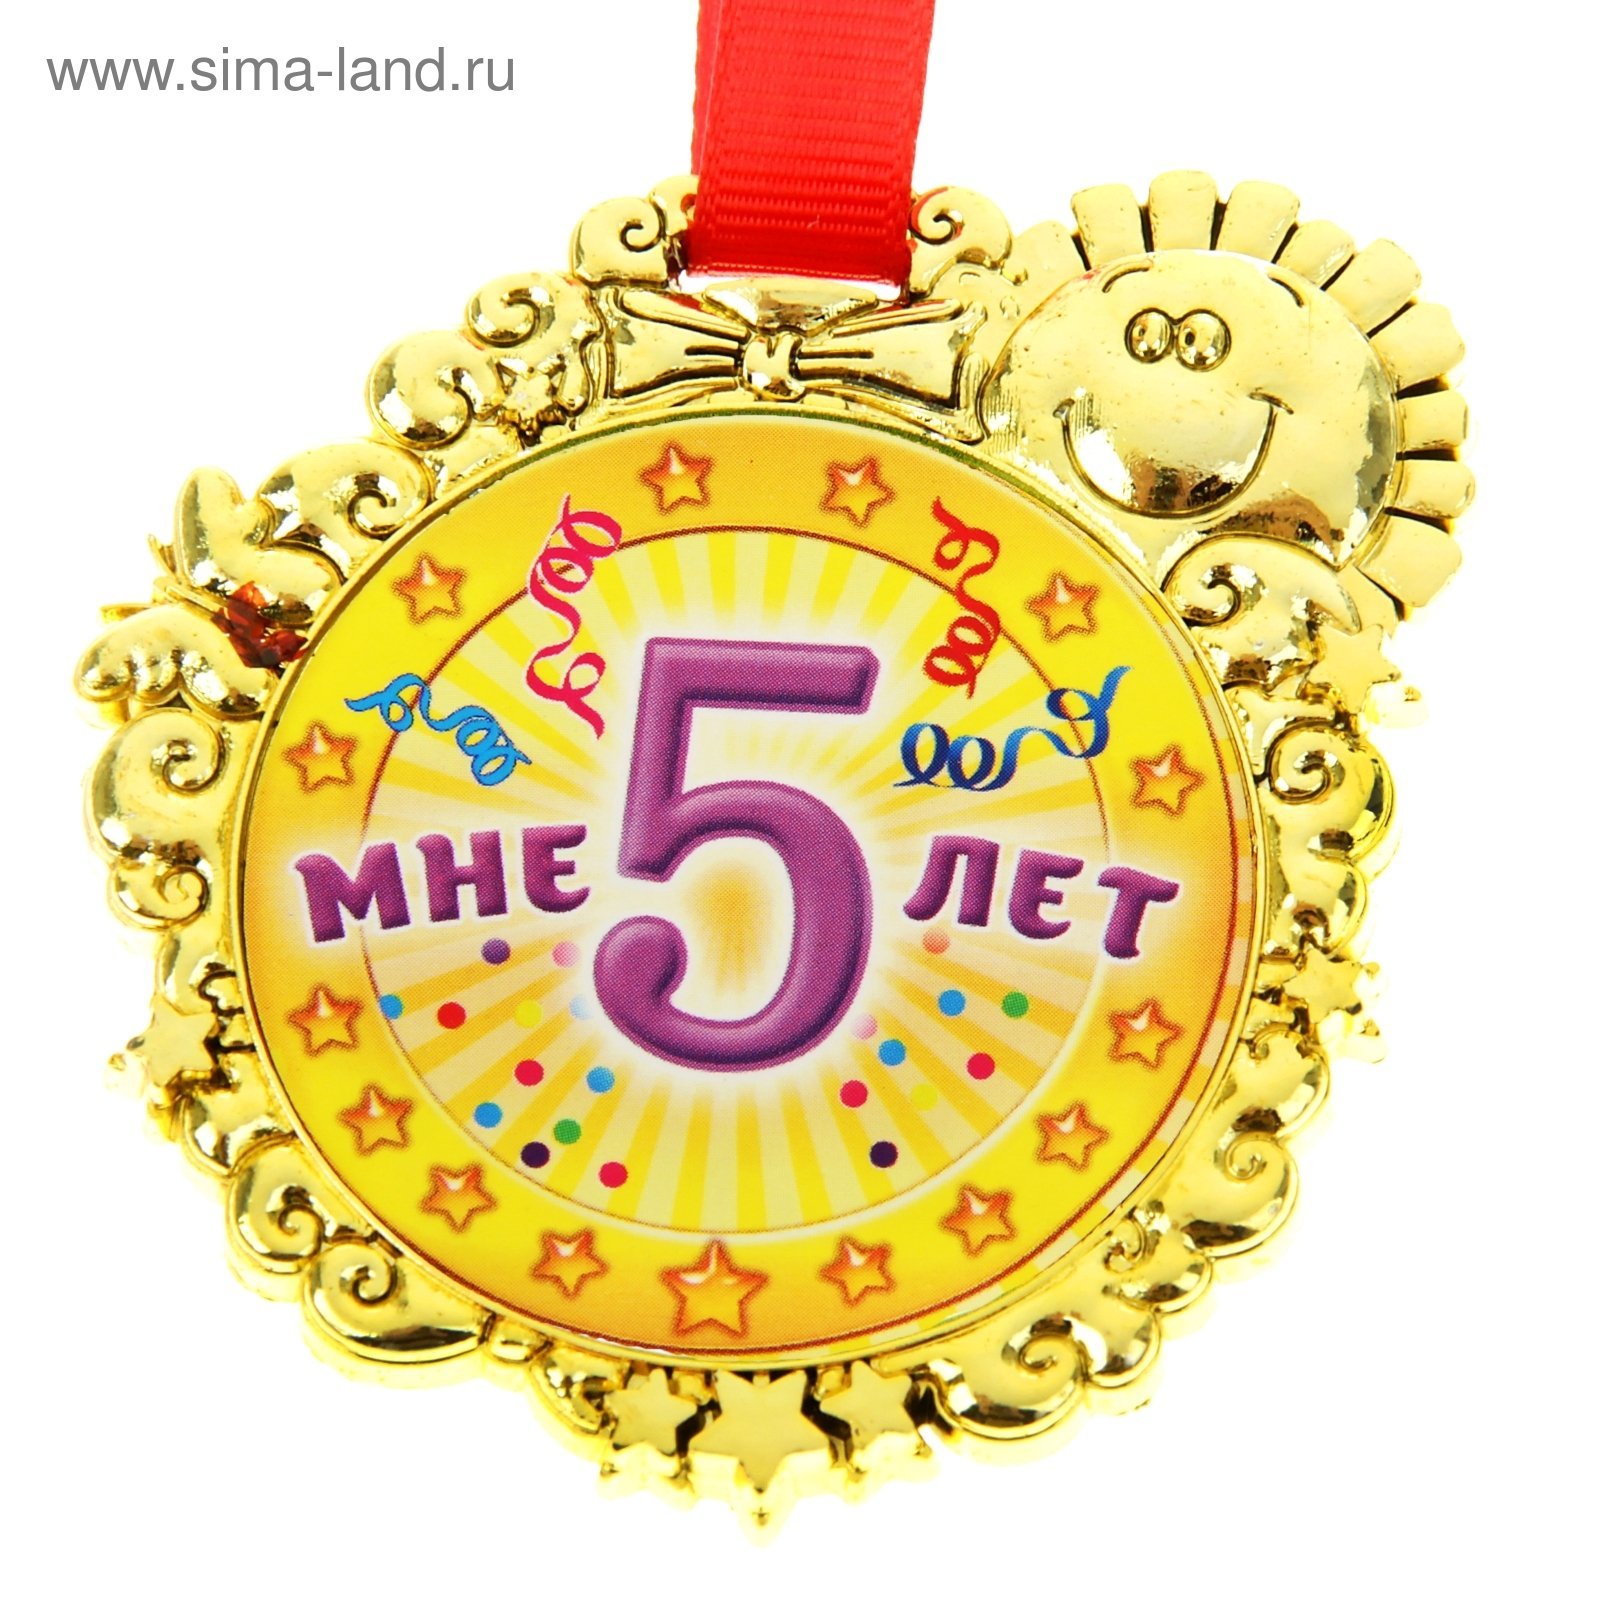 День рождение 5 лет музыкальный. Медаль 5 лет. Медаль *с днем рождения*. Медаль с юбилеем. Медаль с днем рождения 5 лет.